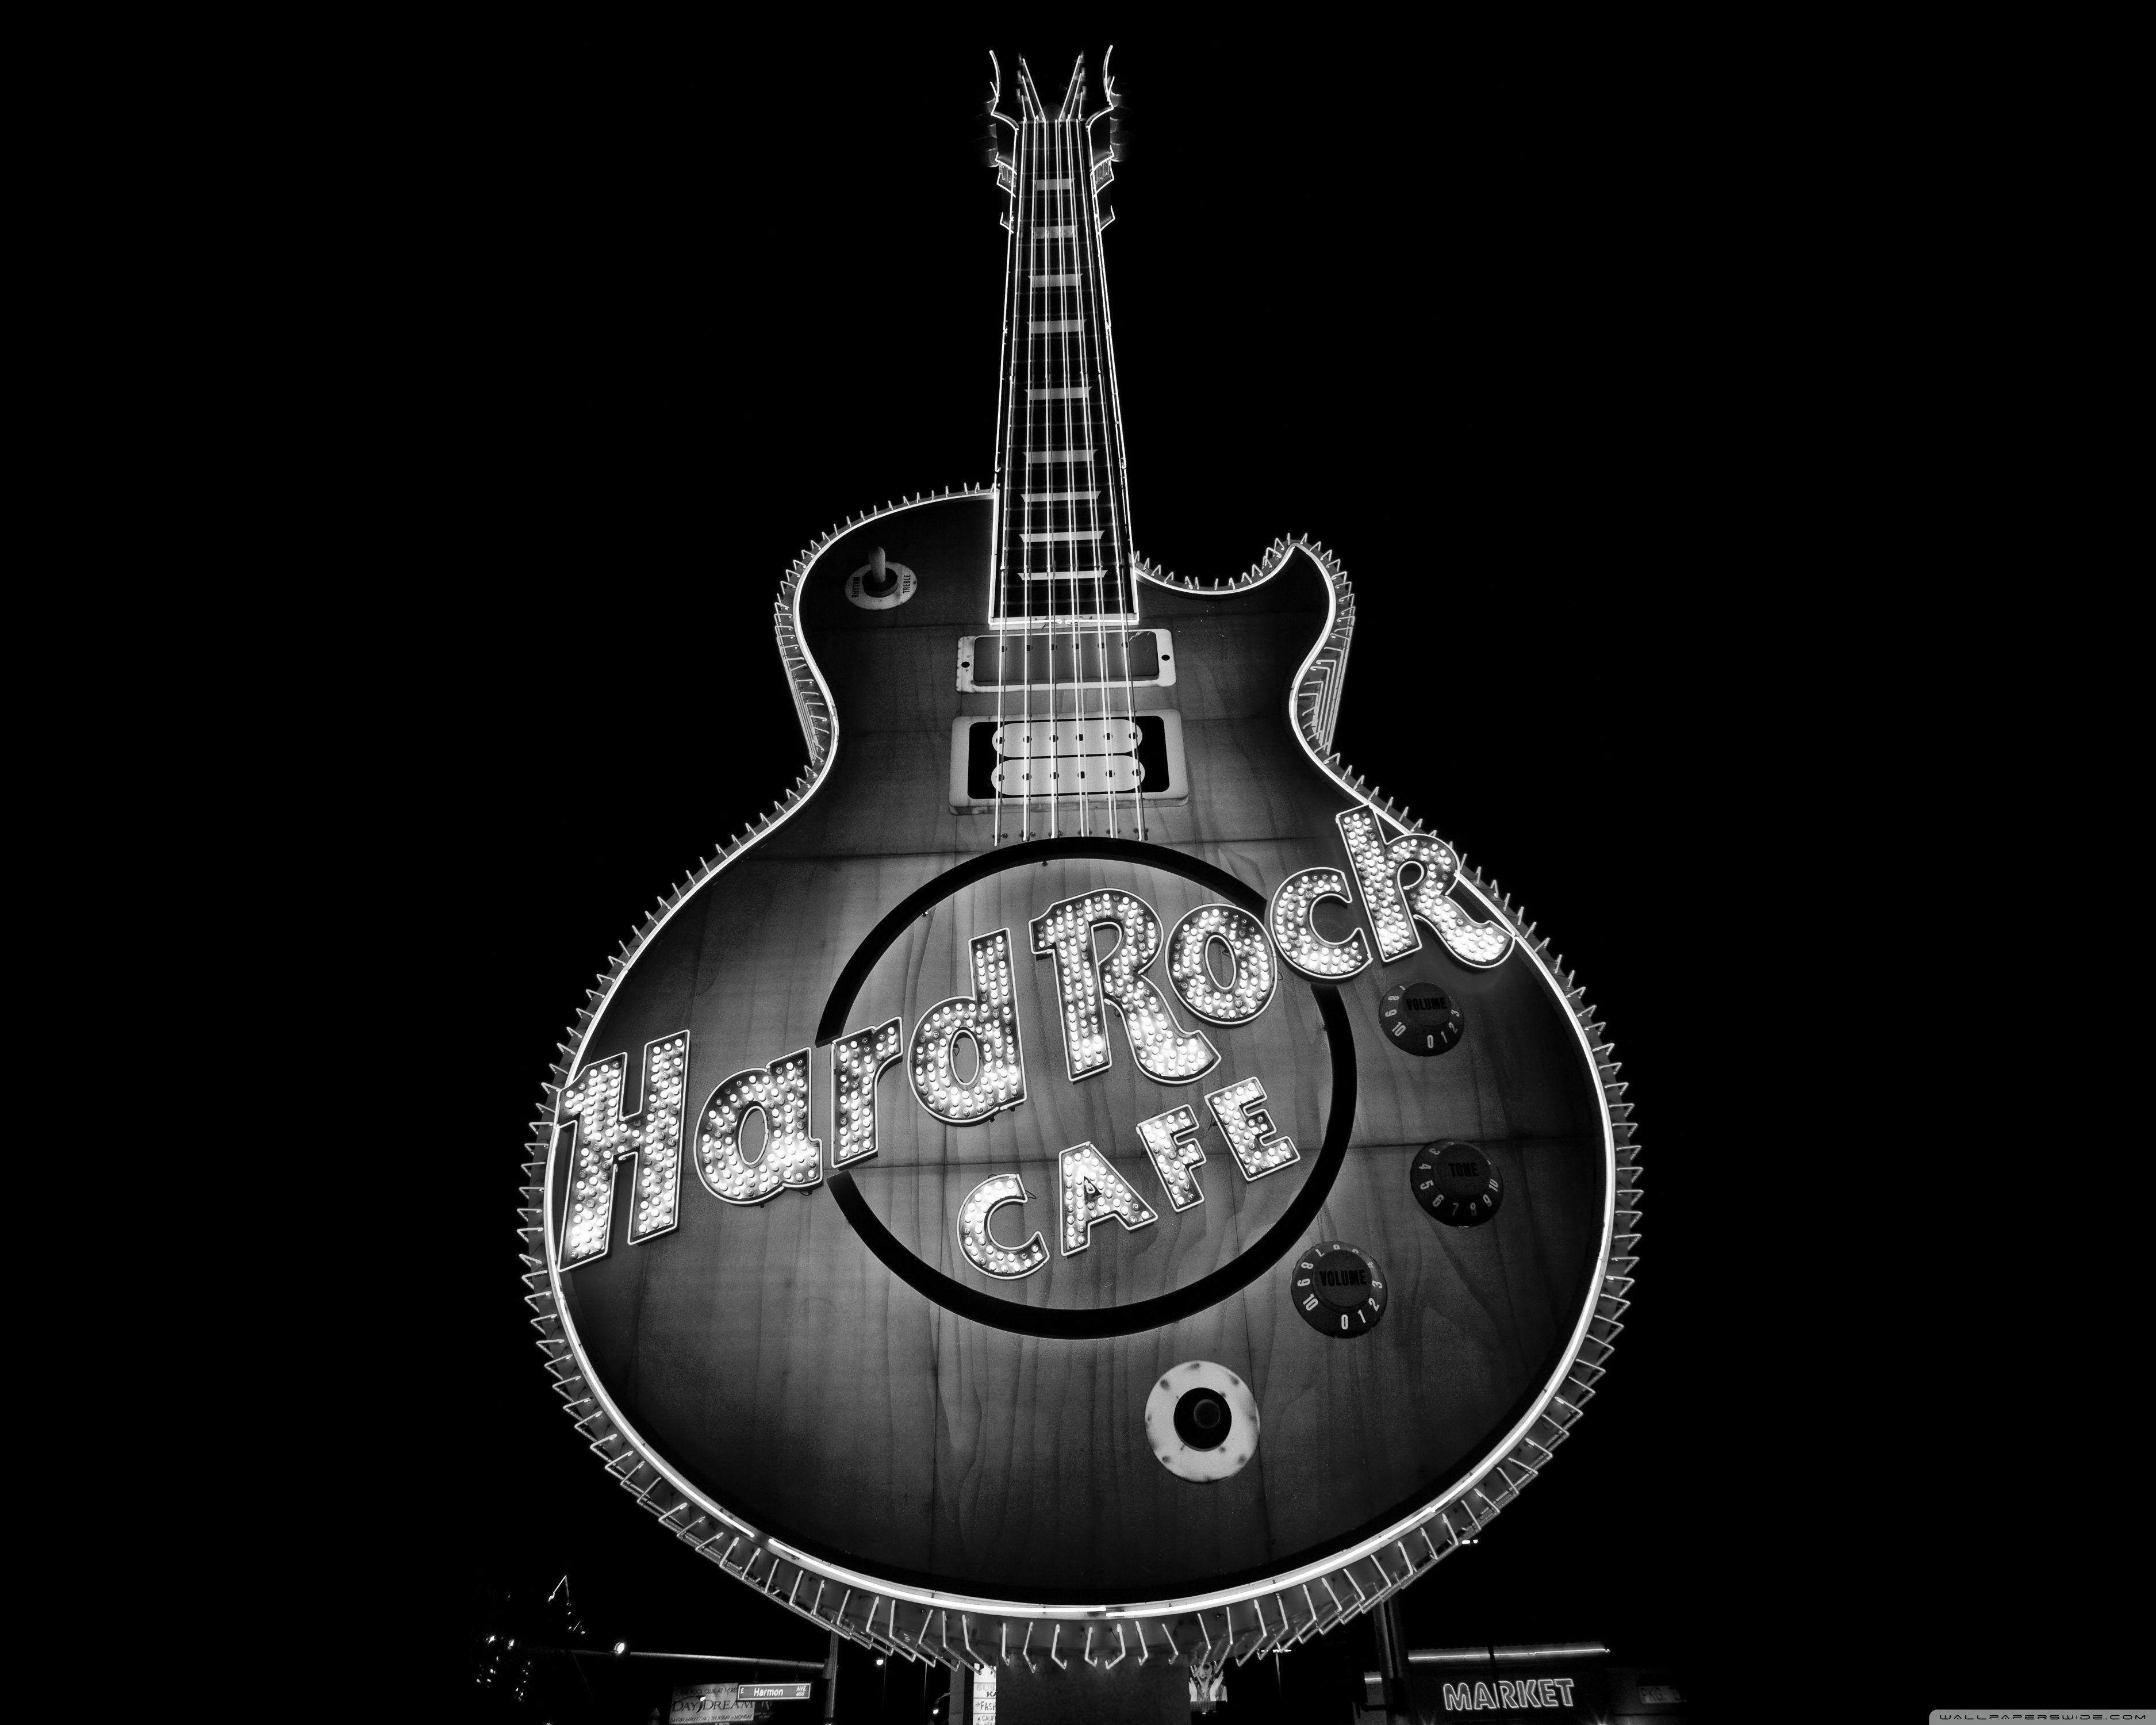 Hard Rock Cafe, Las Vegas HD desktop wallpaper, Widescreen, High